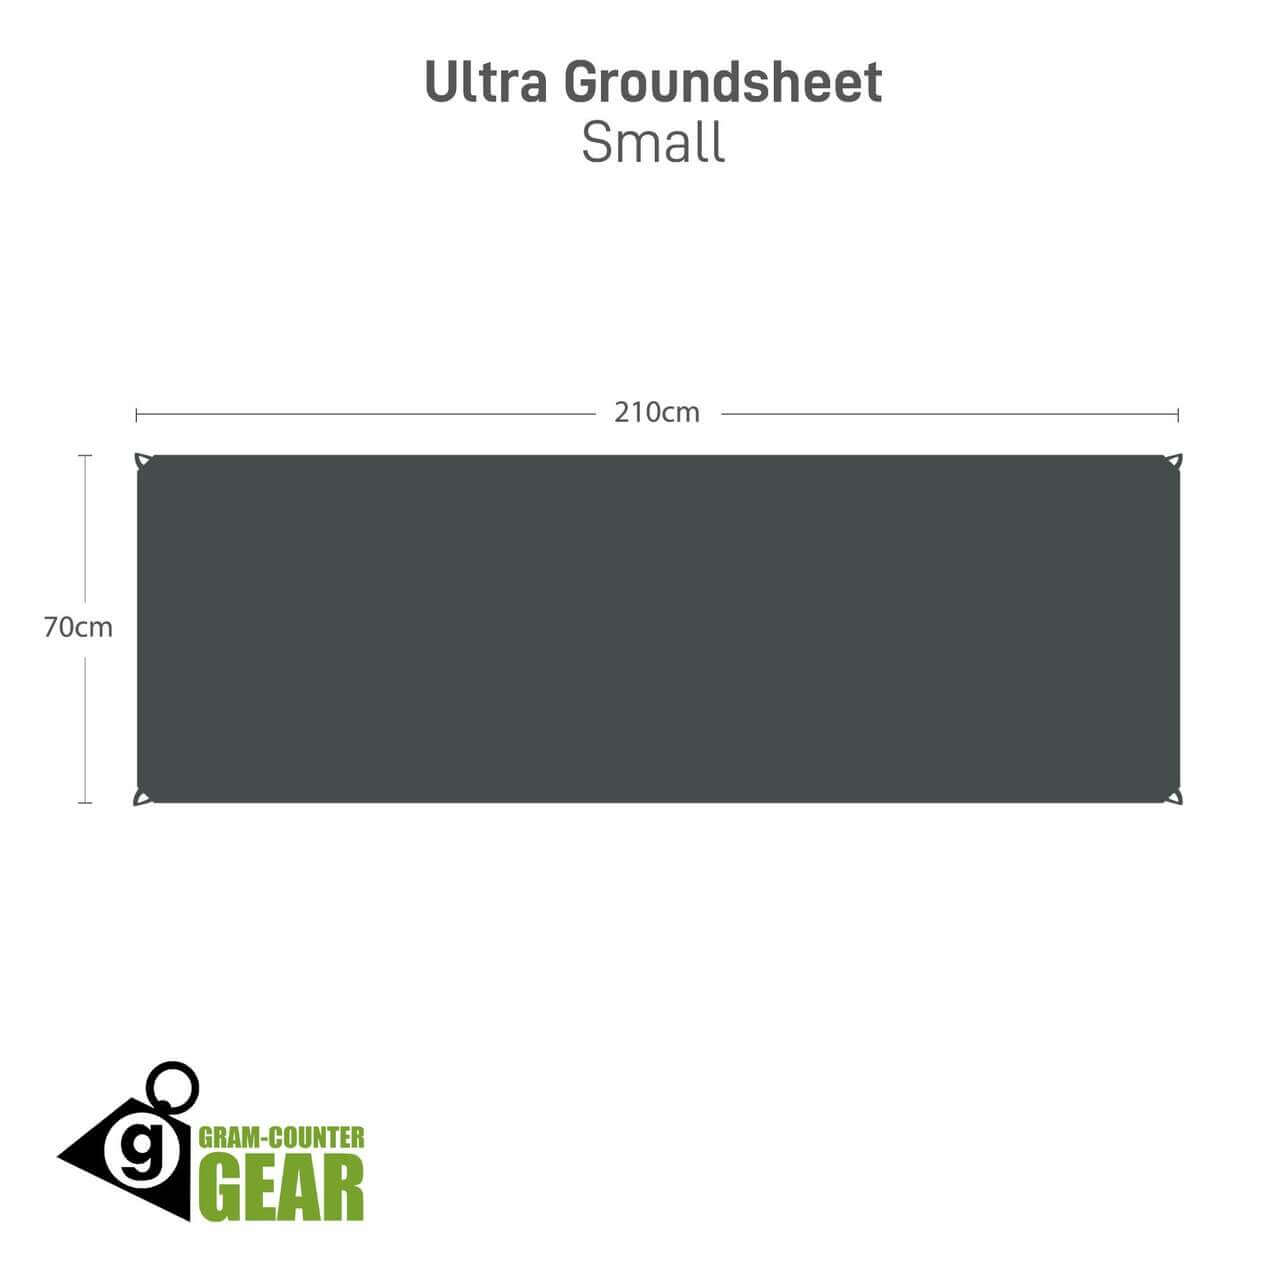 Gram-Counter Gear Ultra Groundsheet